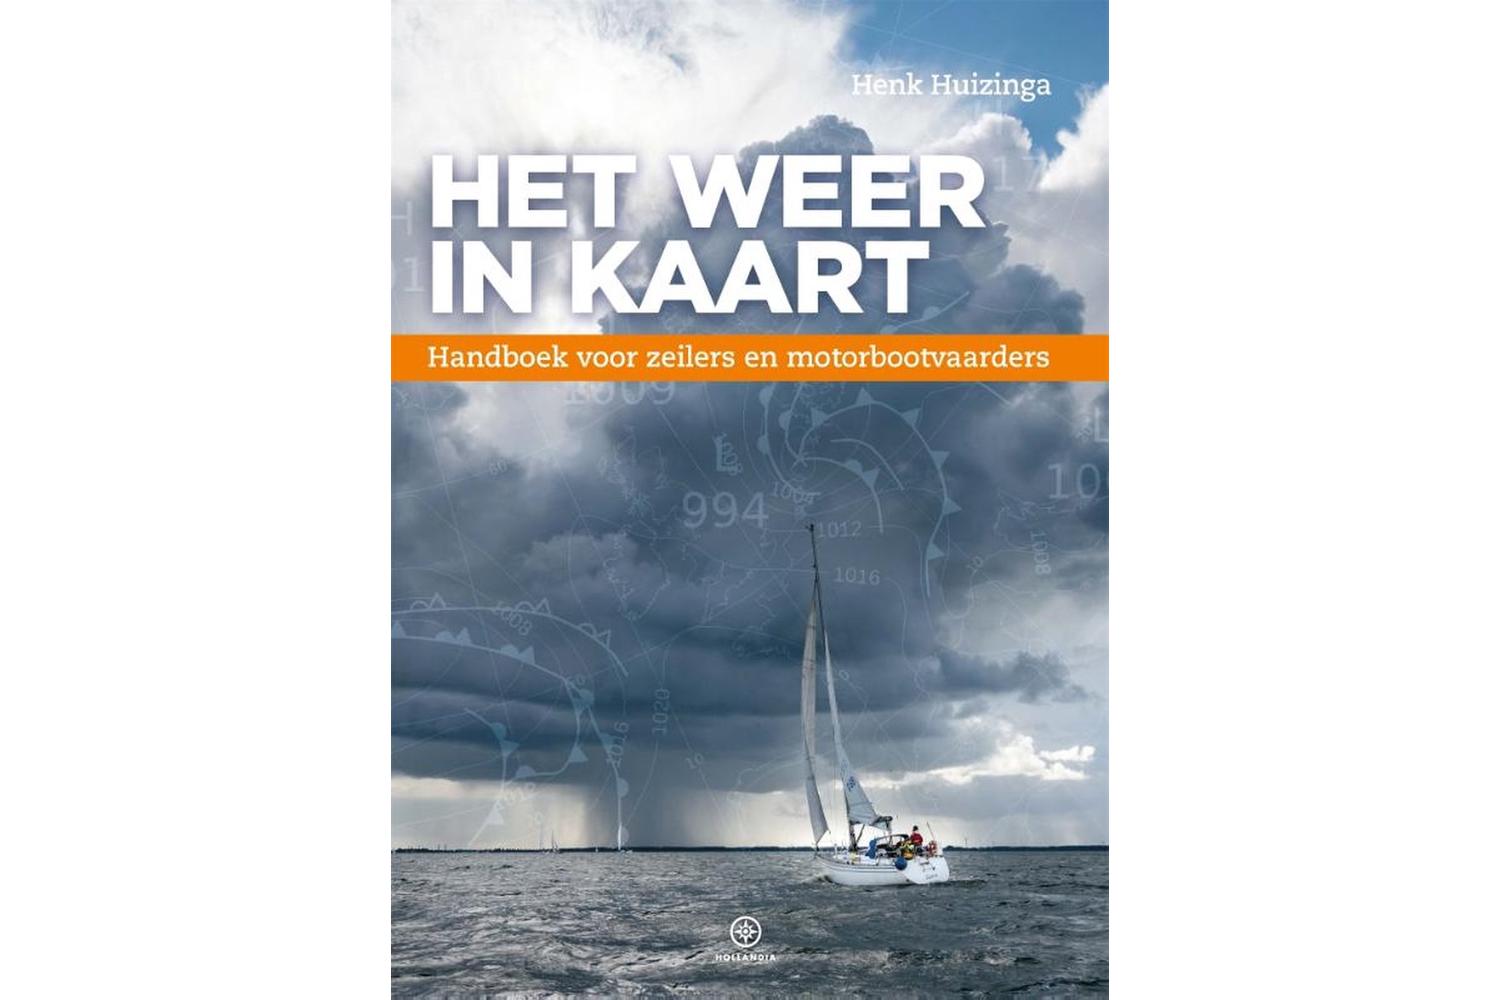 Het weer in kaart - Henk Huizinga